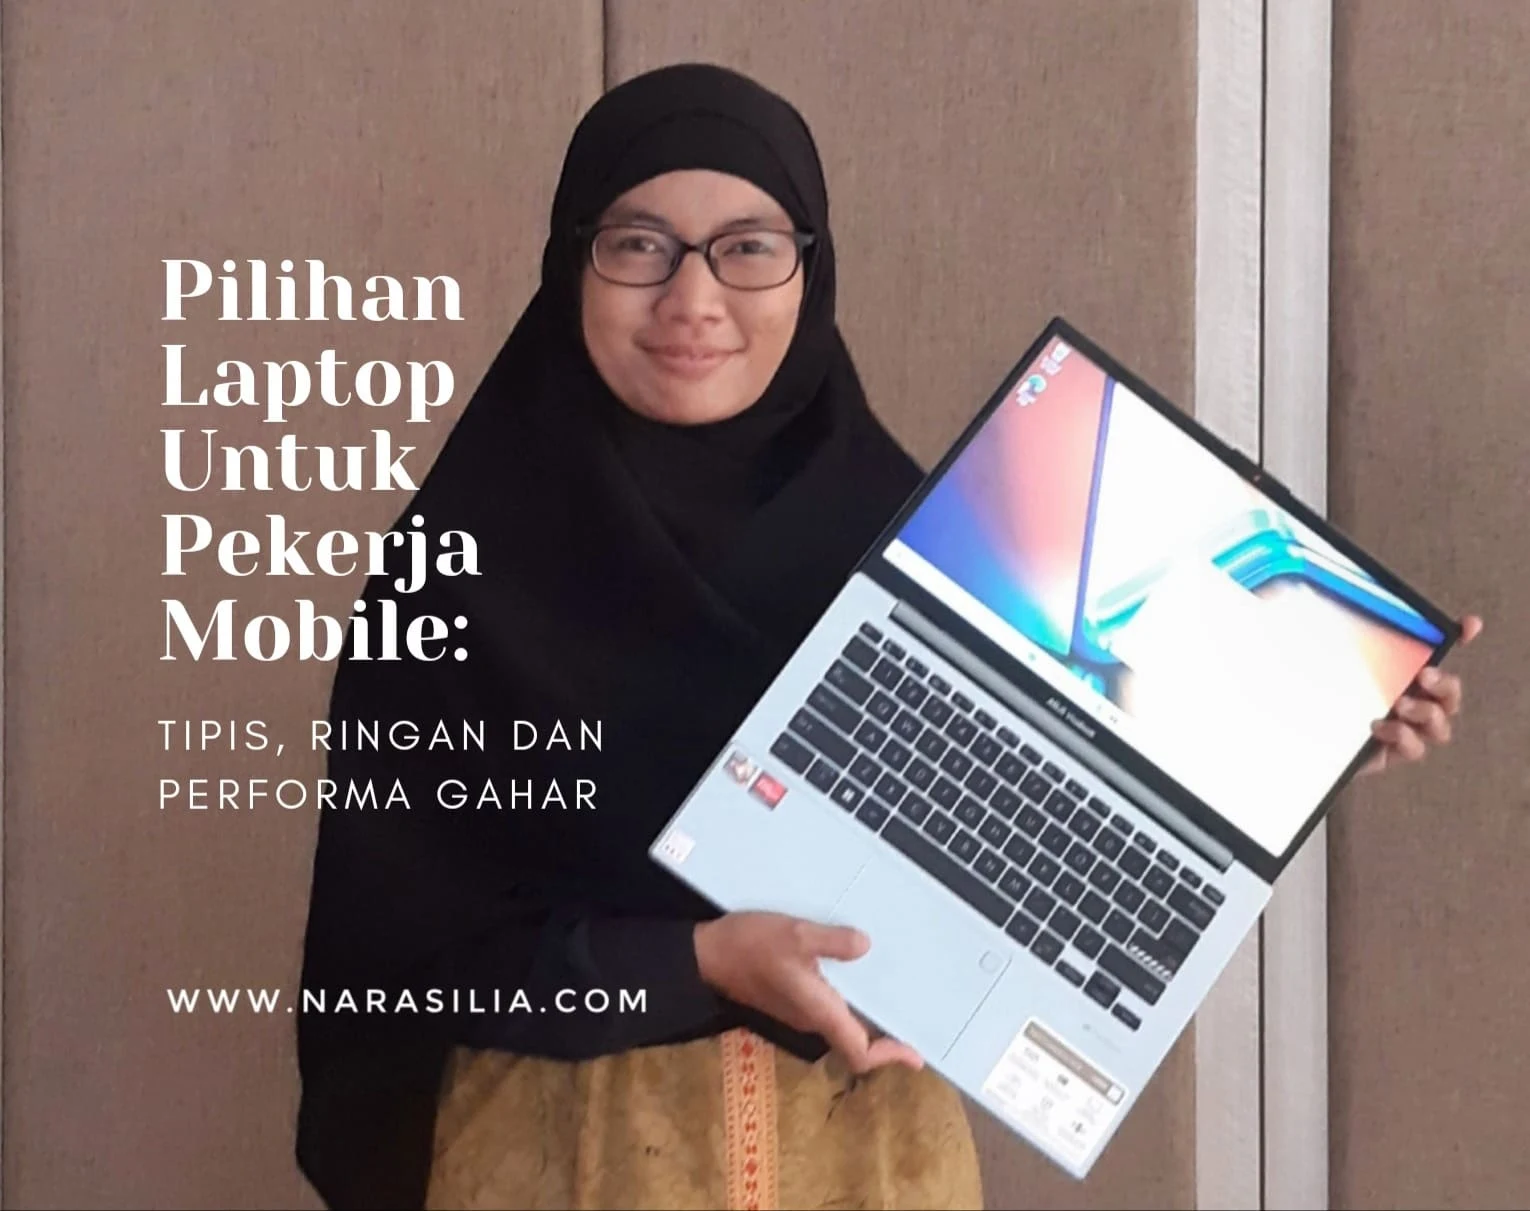 4 Pilihan Laptop Untuk Pekerja Mobile: Tipis, Ringan dan Performa Gahar